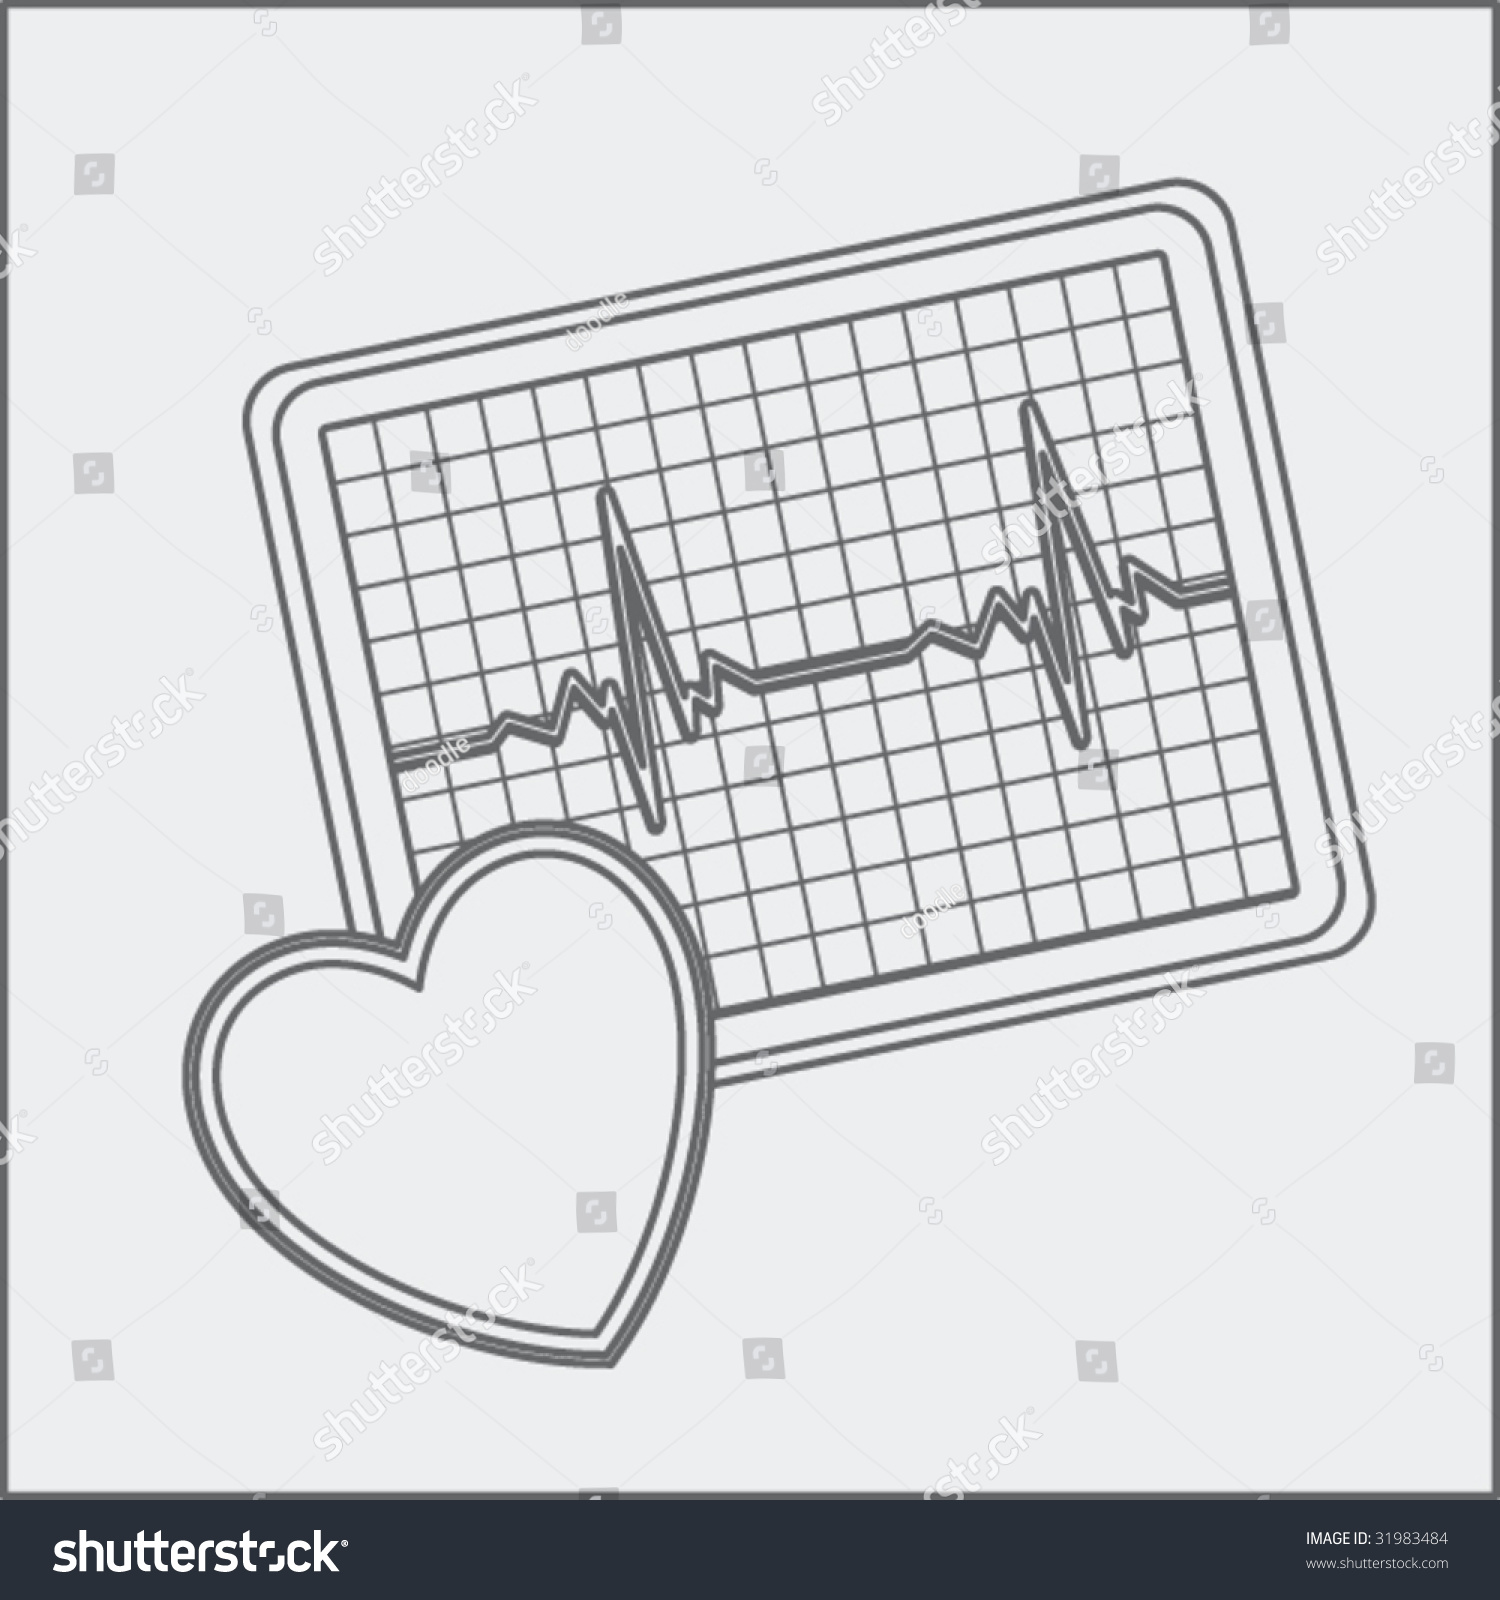 Heart Monitor Sketch Stock Vector Illustration 31983484 Shutterstock